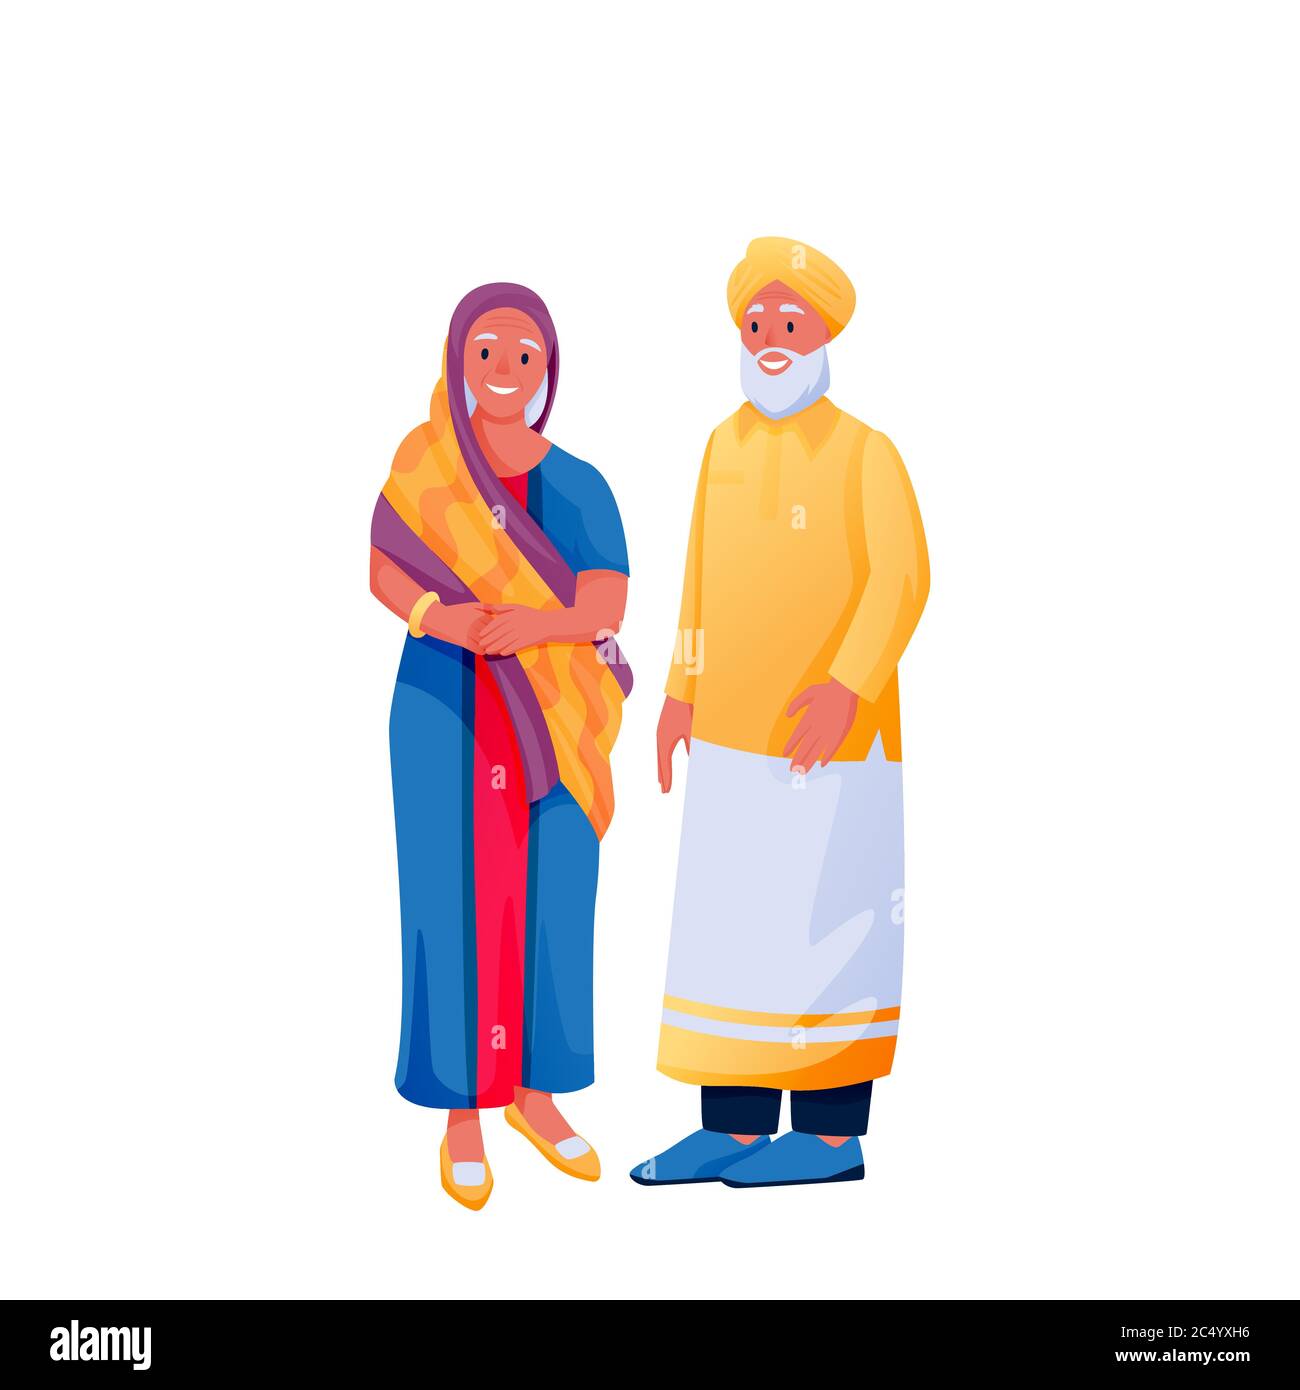 Indisches Senioren glückliches Paar in traditioneller Kleidung, isoliert auf weißem Hintergrund. Indische Frau in bunten schönen Sari und Mann in Hemd und Turban. Stock Vektor